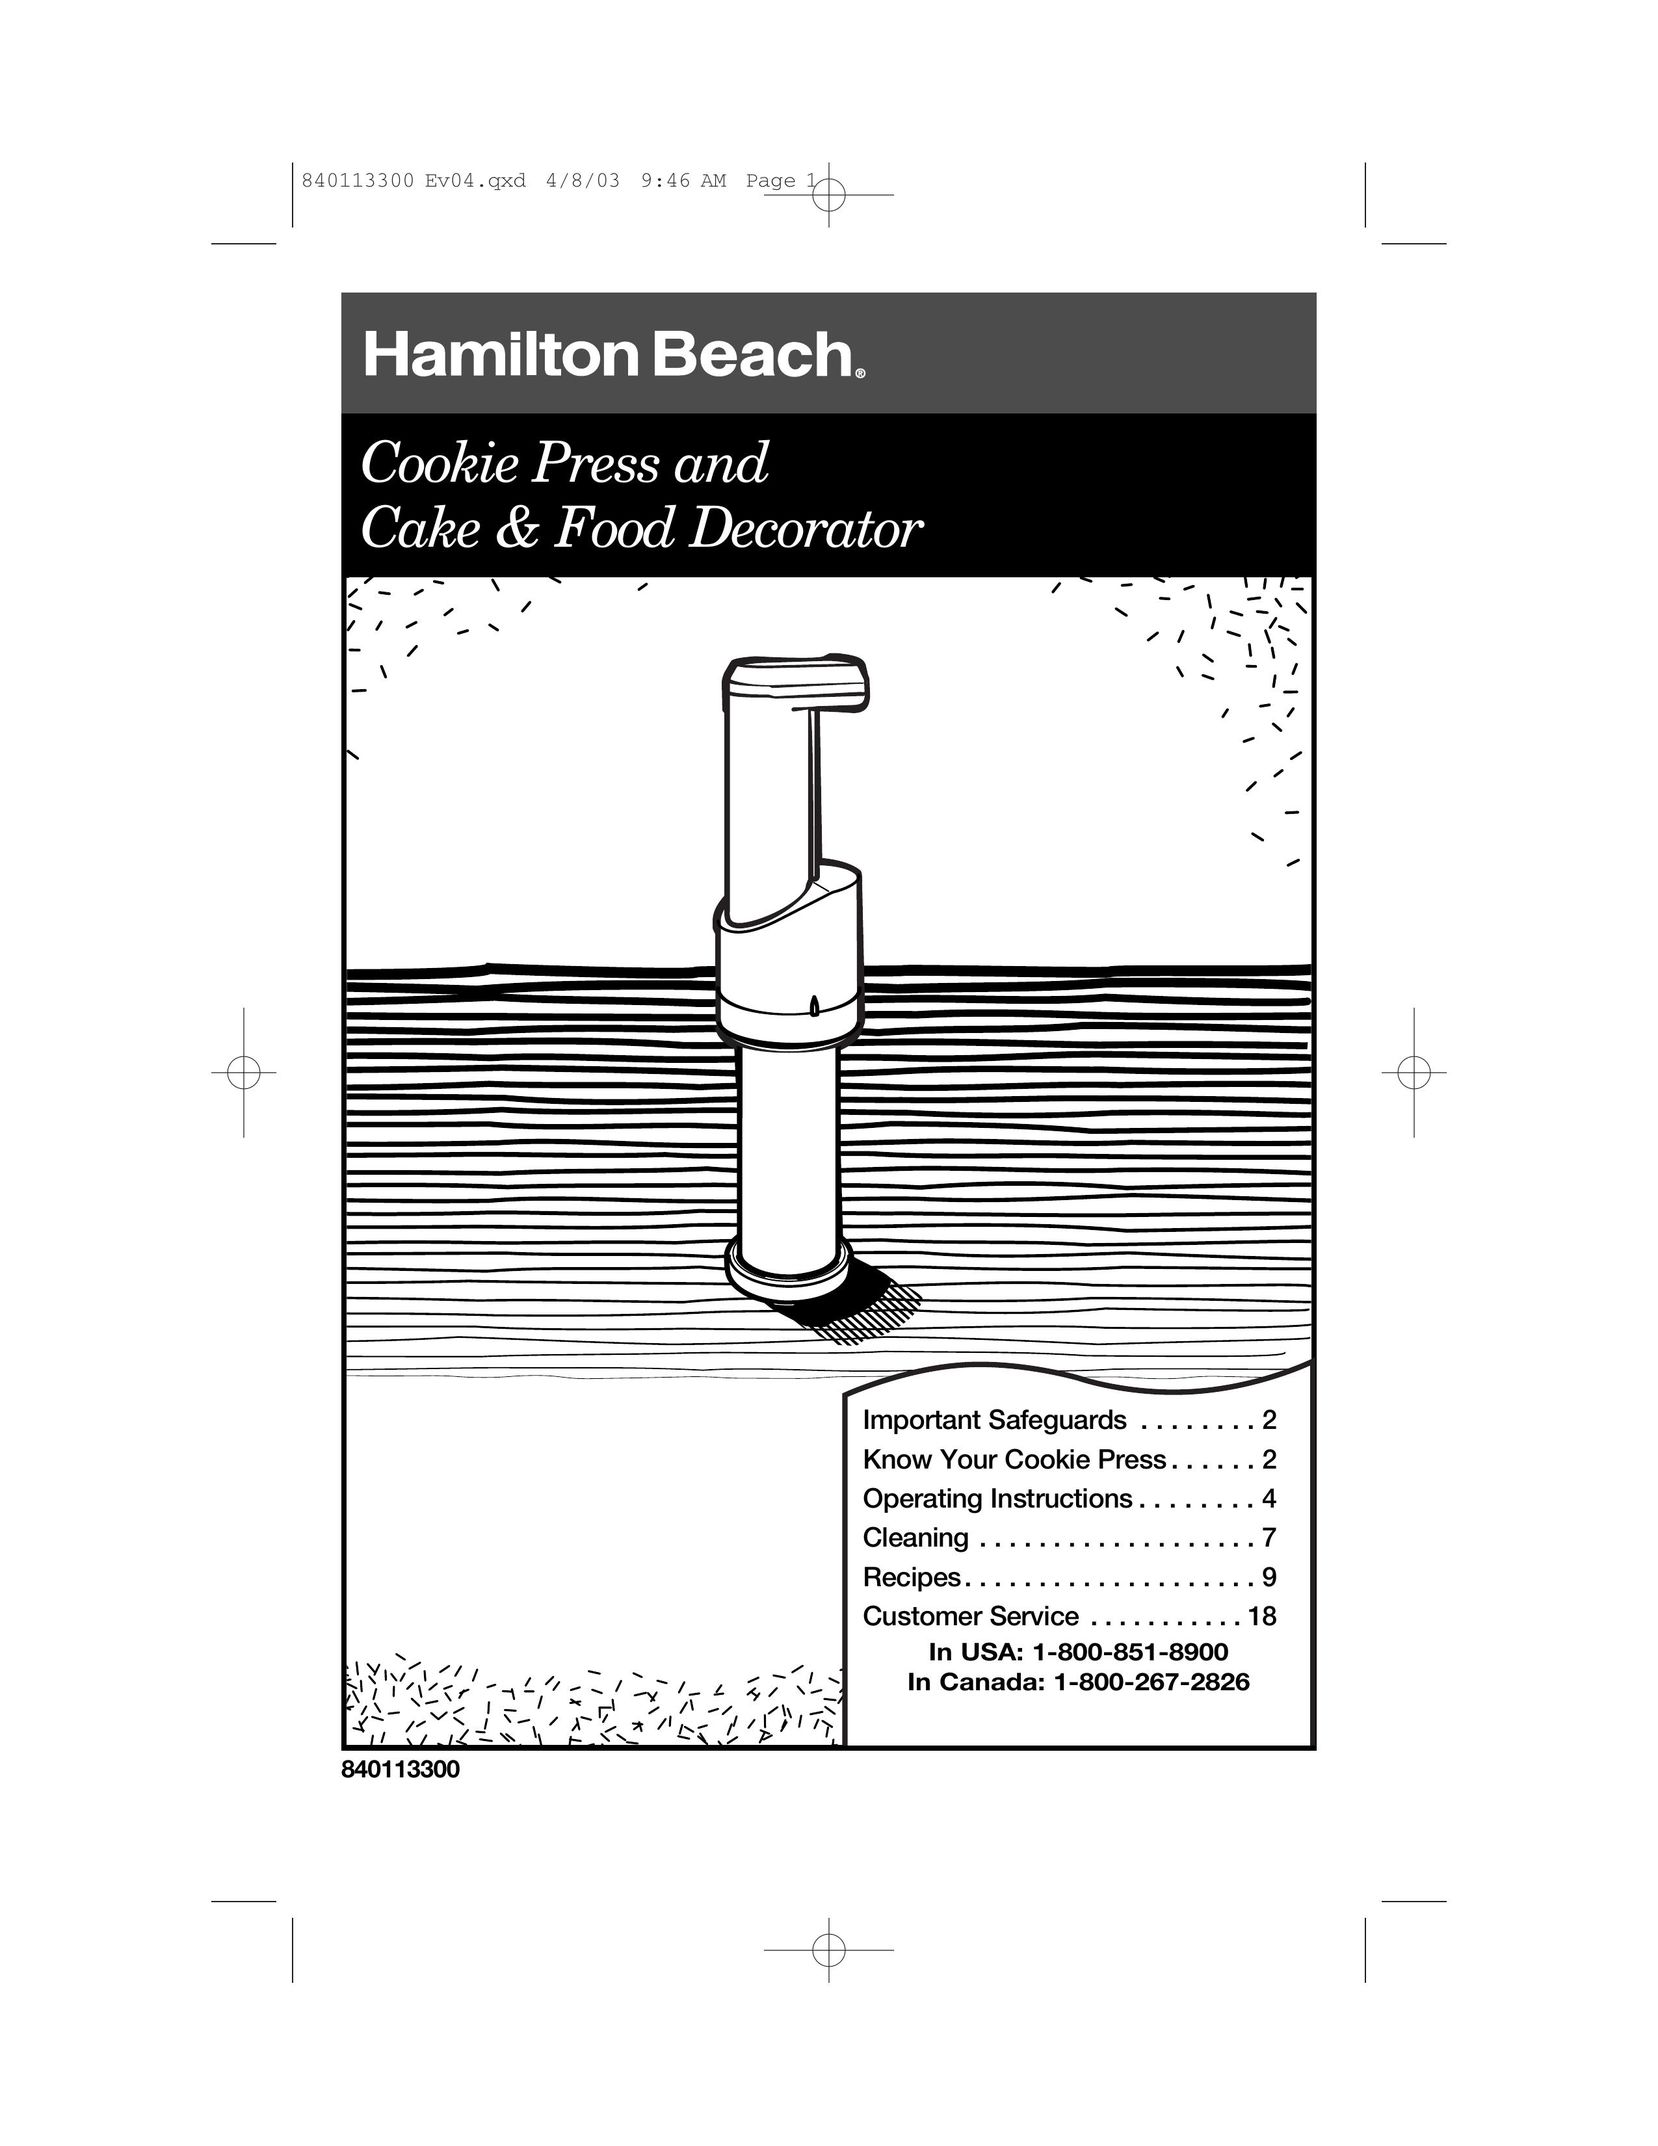 Hamilton Beach 840113300 Cooktop User Manual